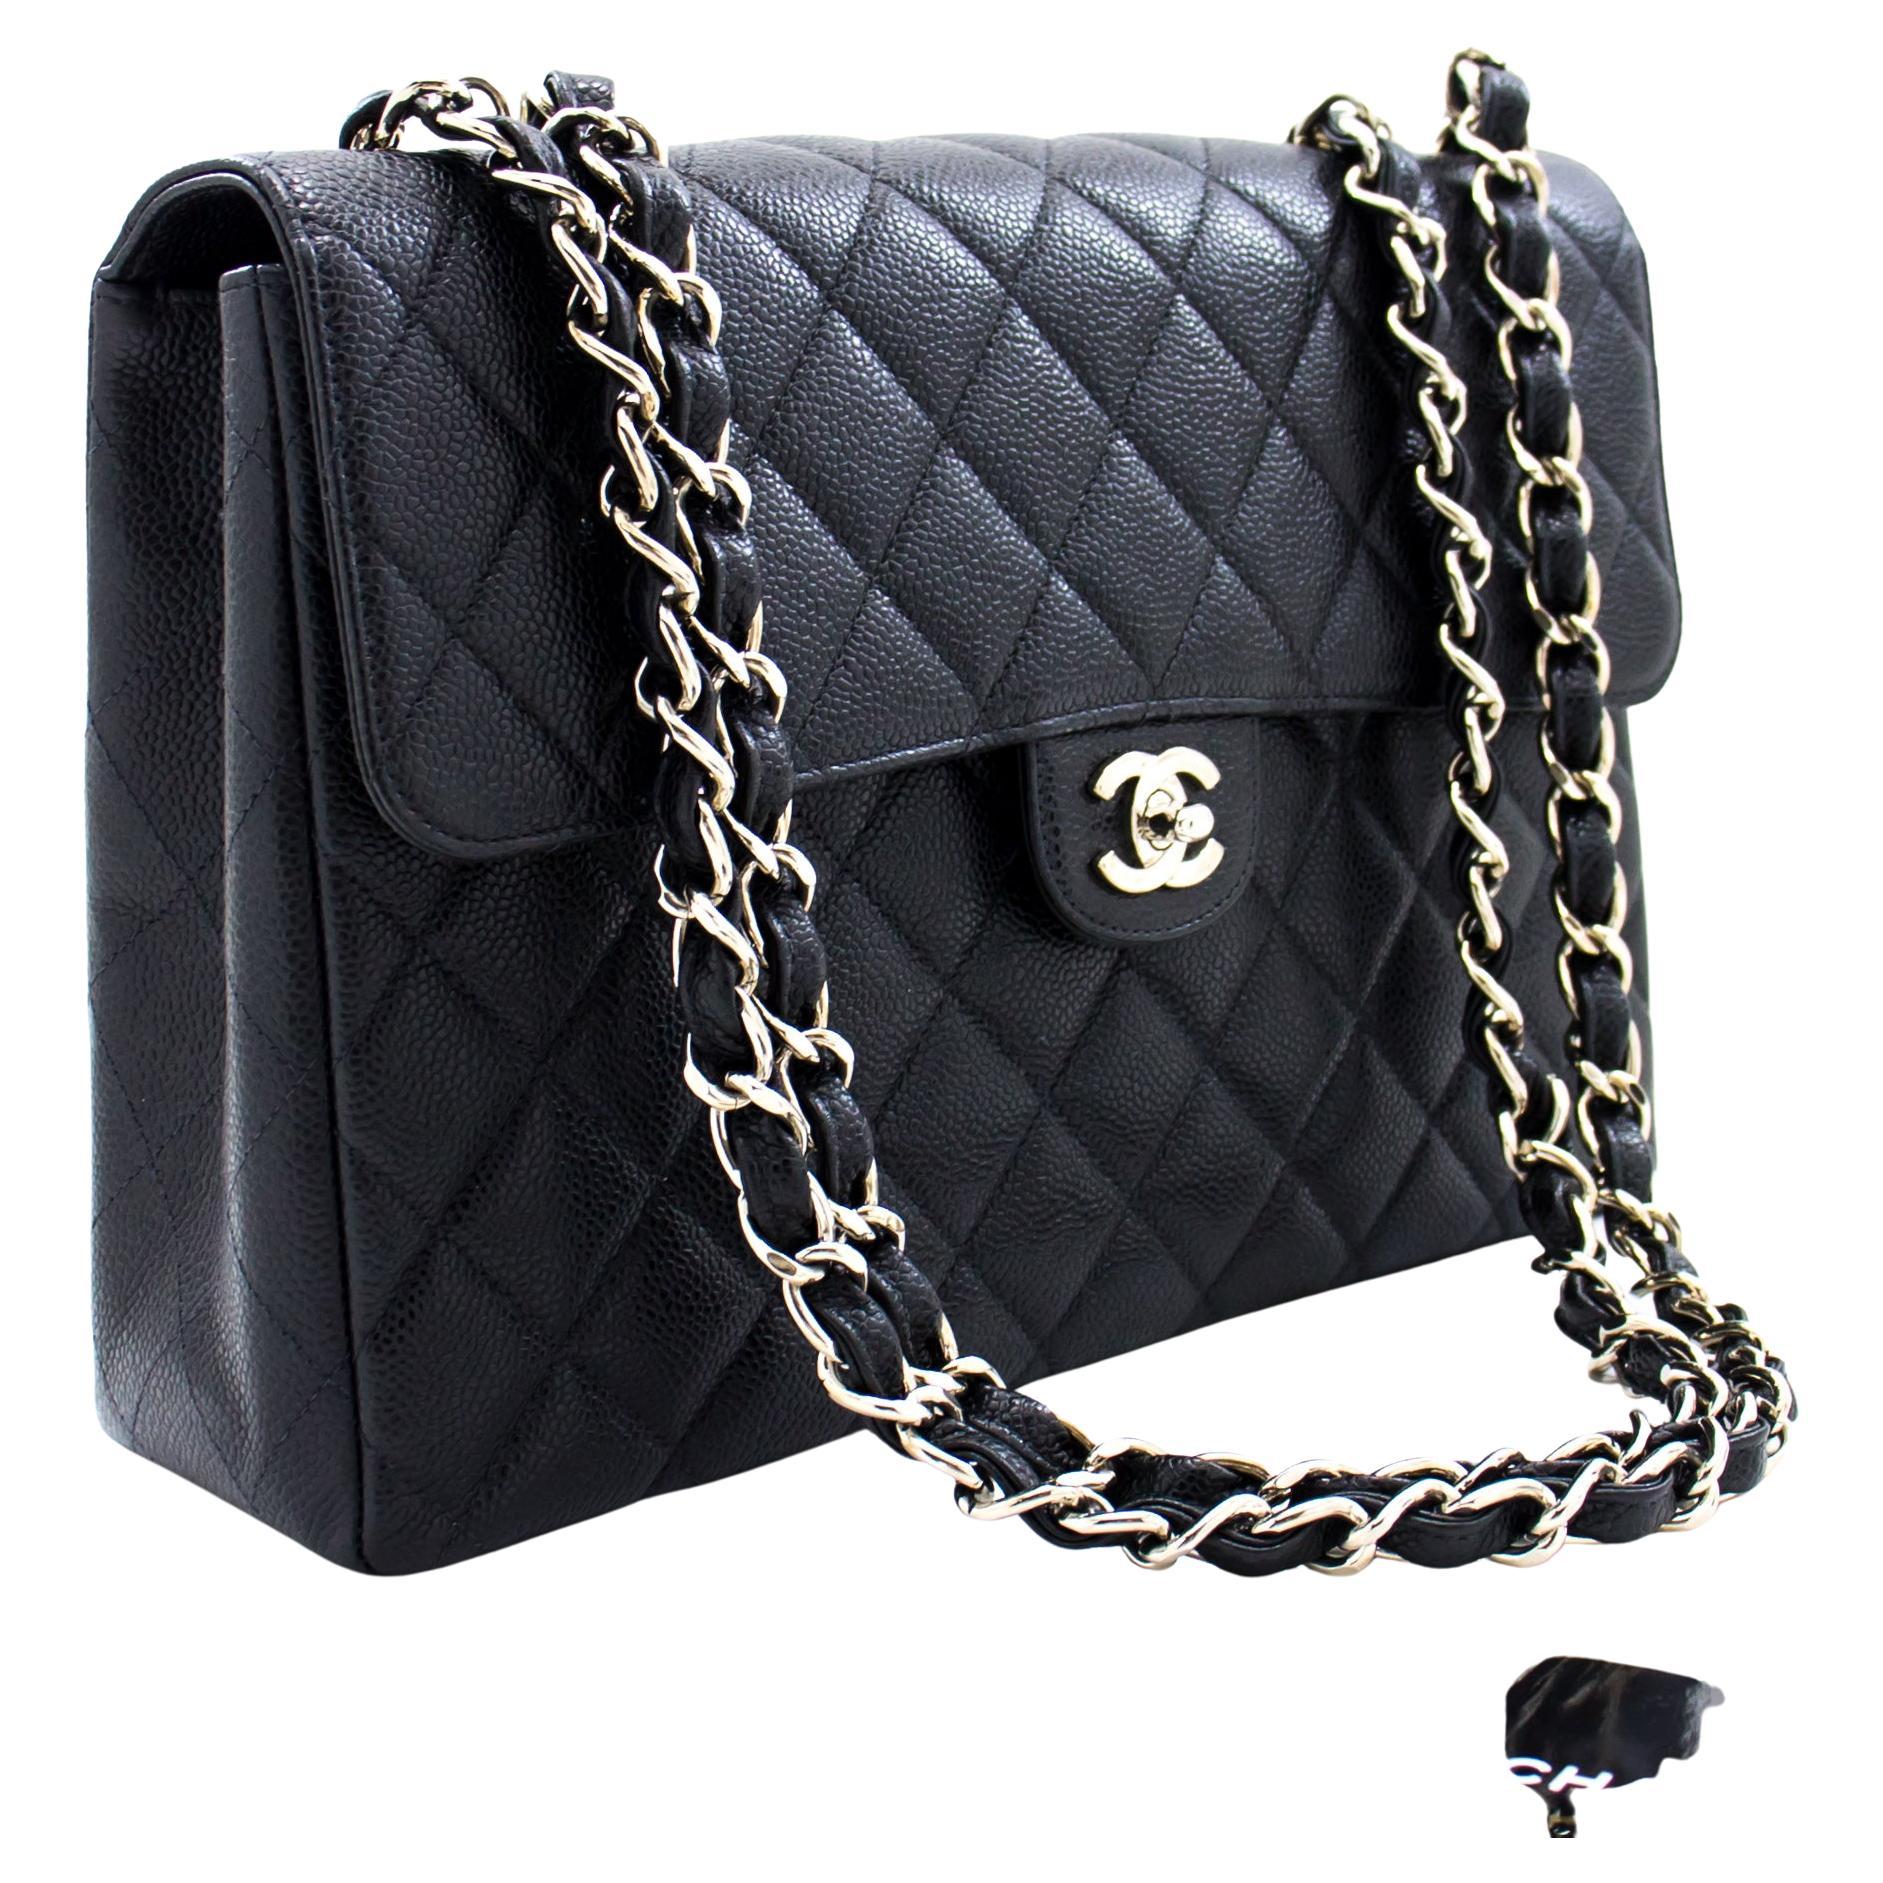 Large Classic Chanel Handbag - 230 For Sale on 1stDibs